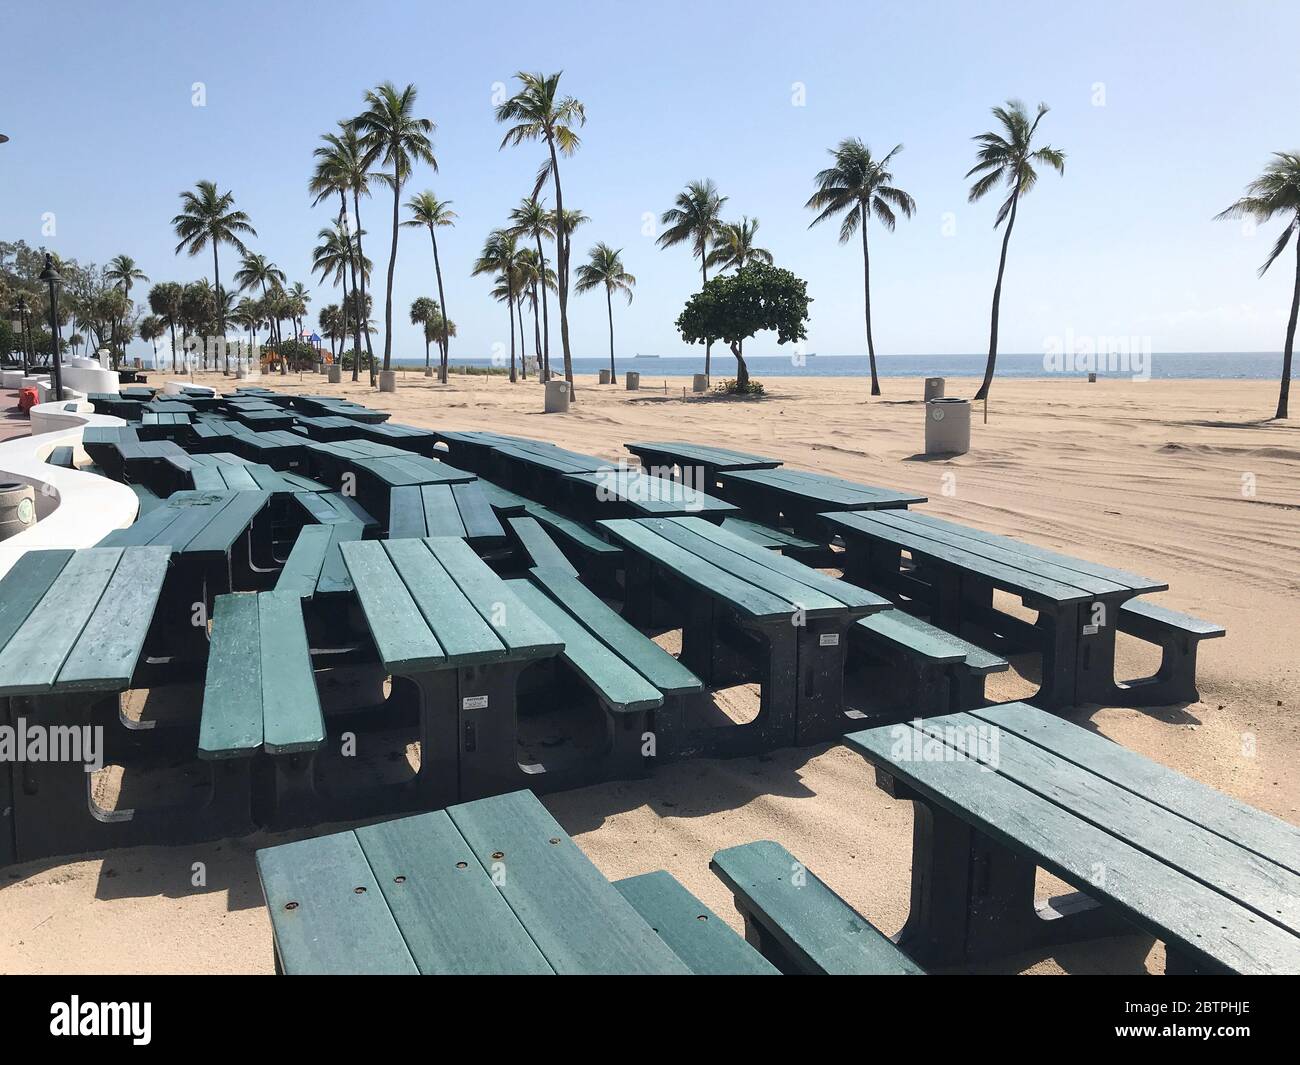 Tables de pique-nique empilées sur la plage fermée en raison de Covid Banque D'Images